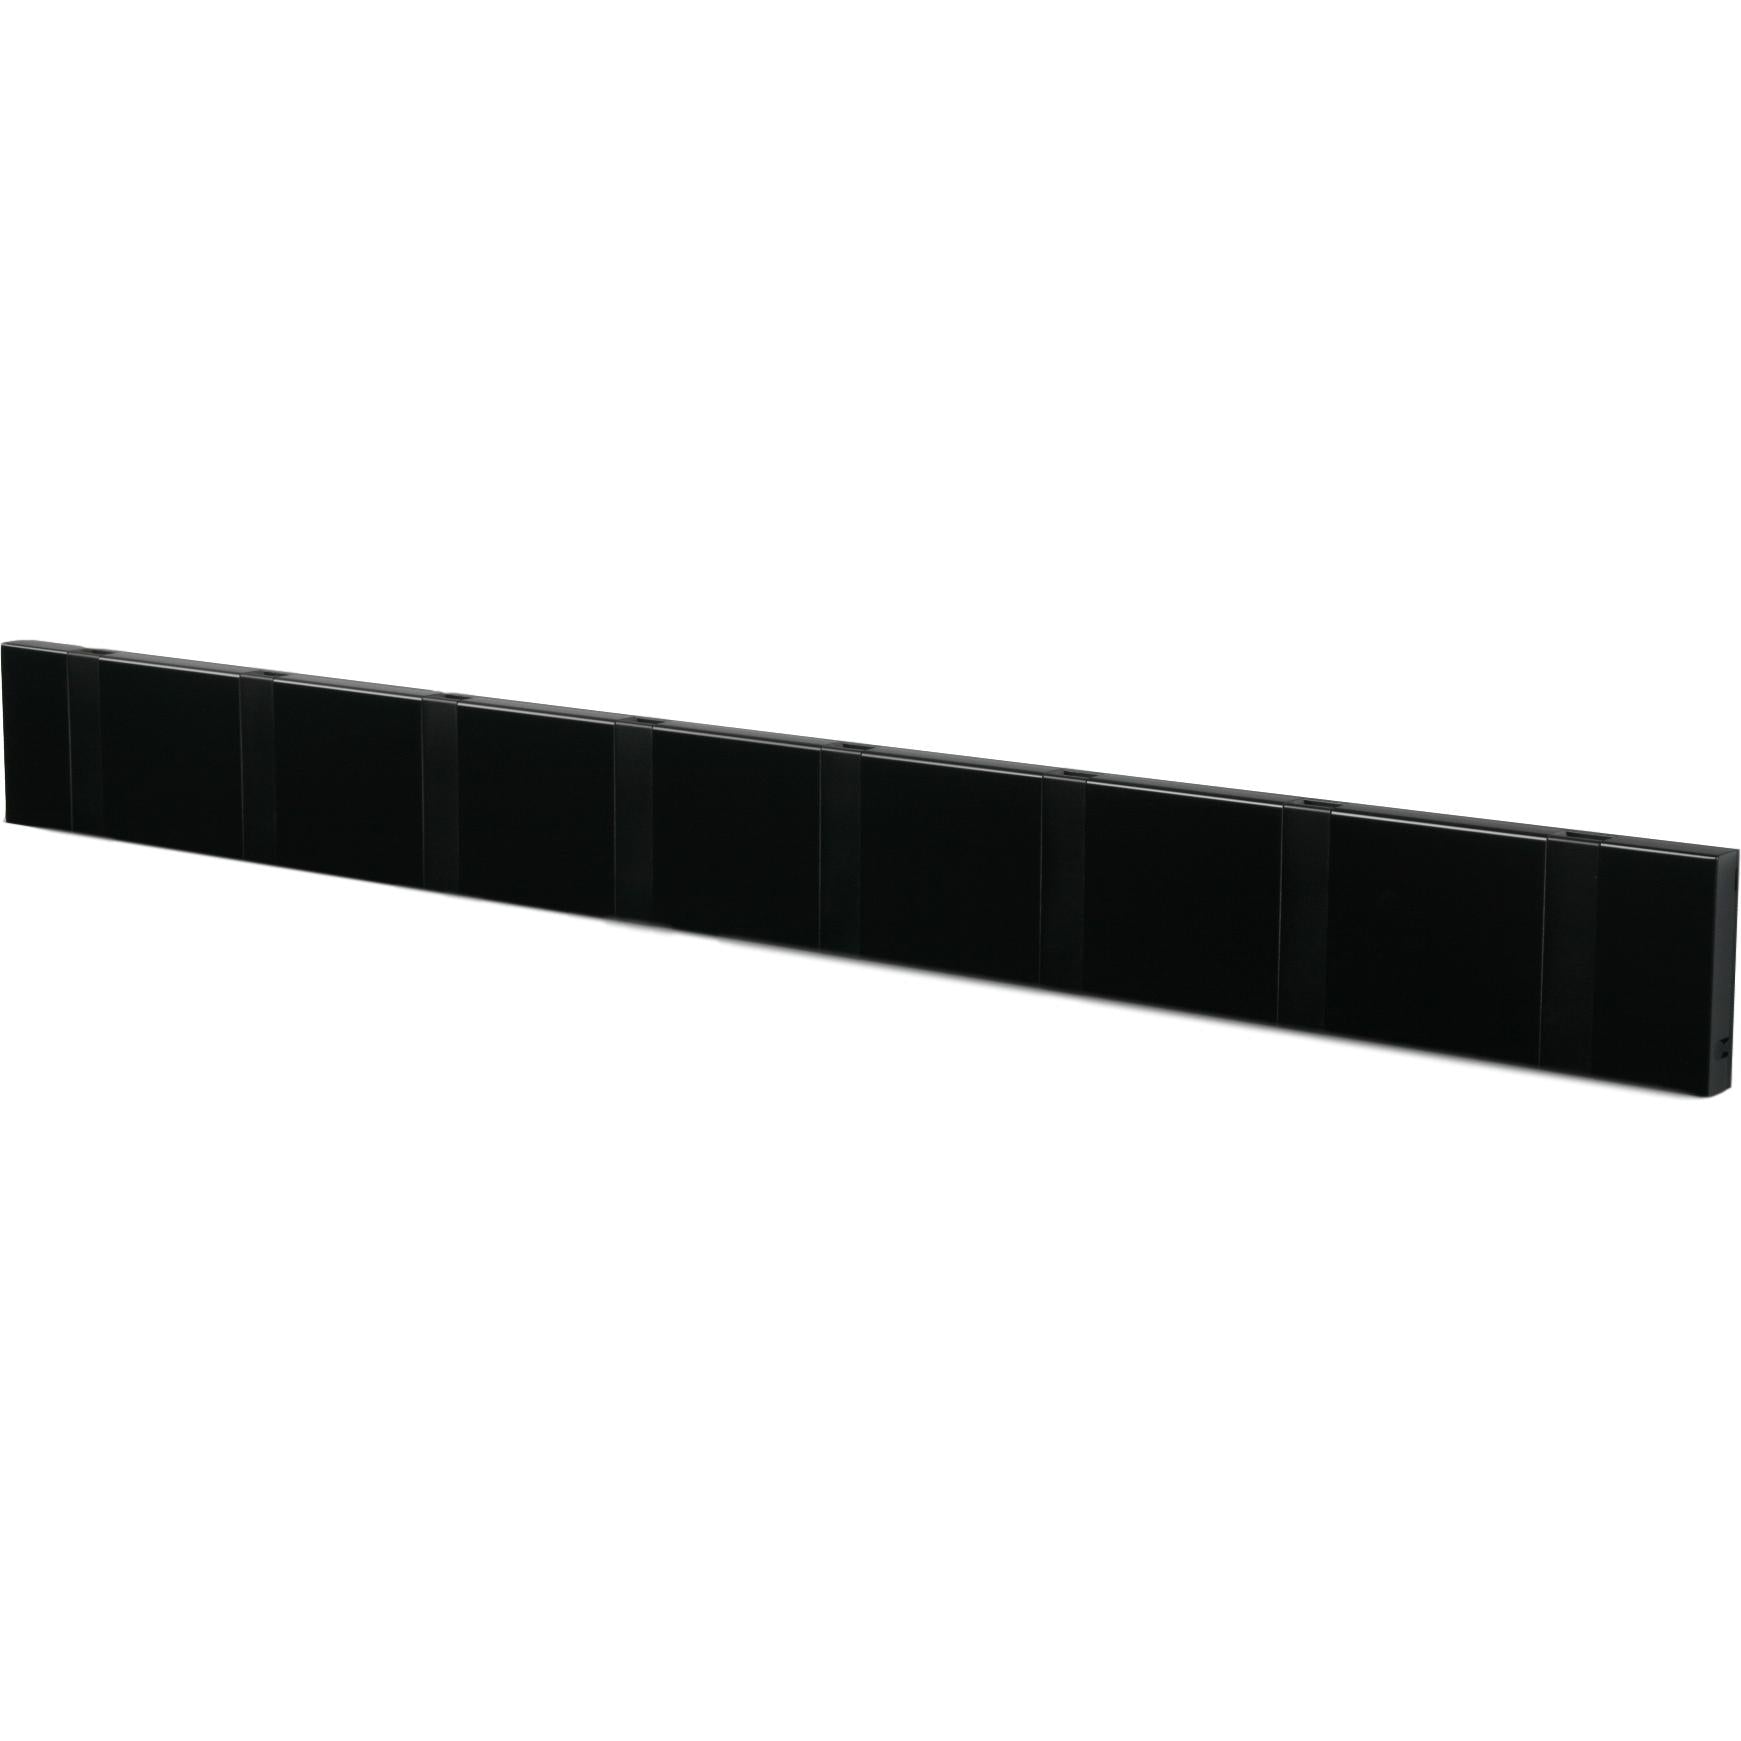 Loca Knax horizontale klaadrek 8 haken, zwart/zwart